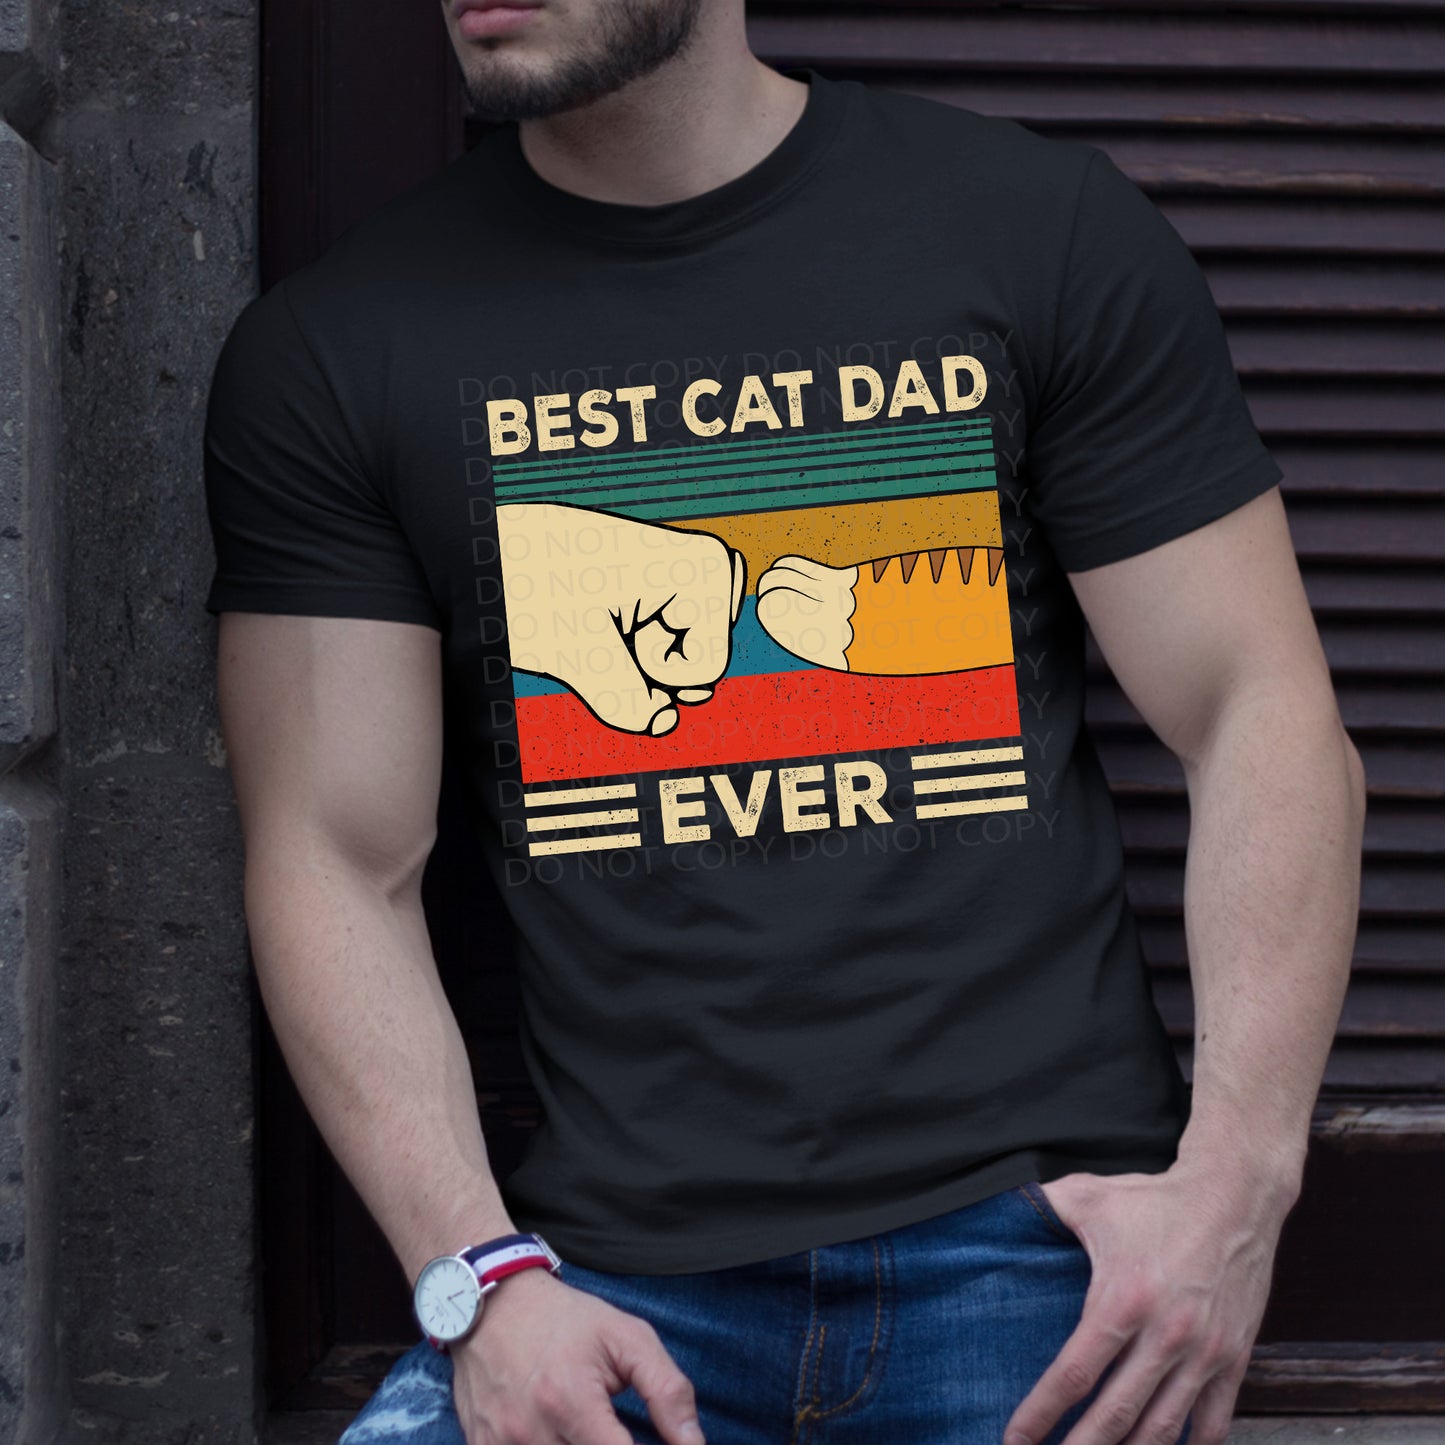 Best Cat Dad DTF & Sublimation Transfer